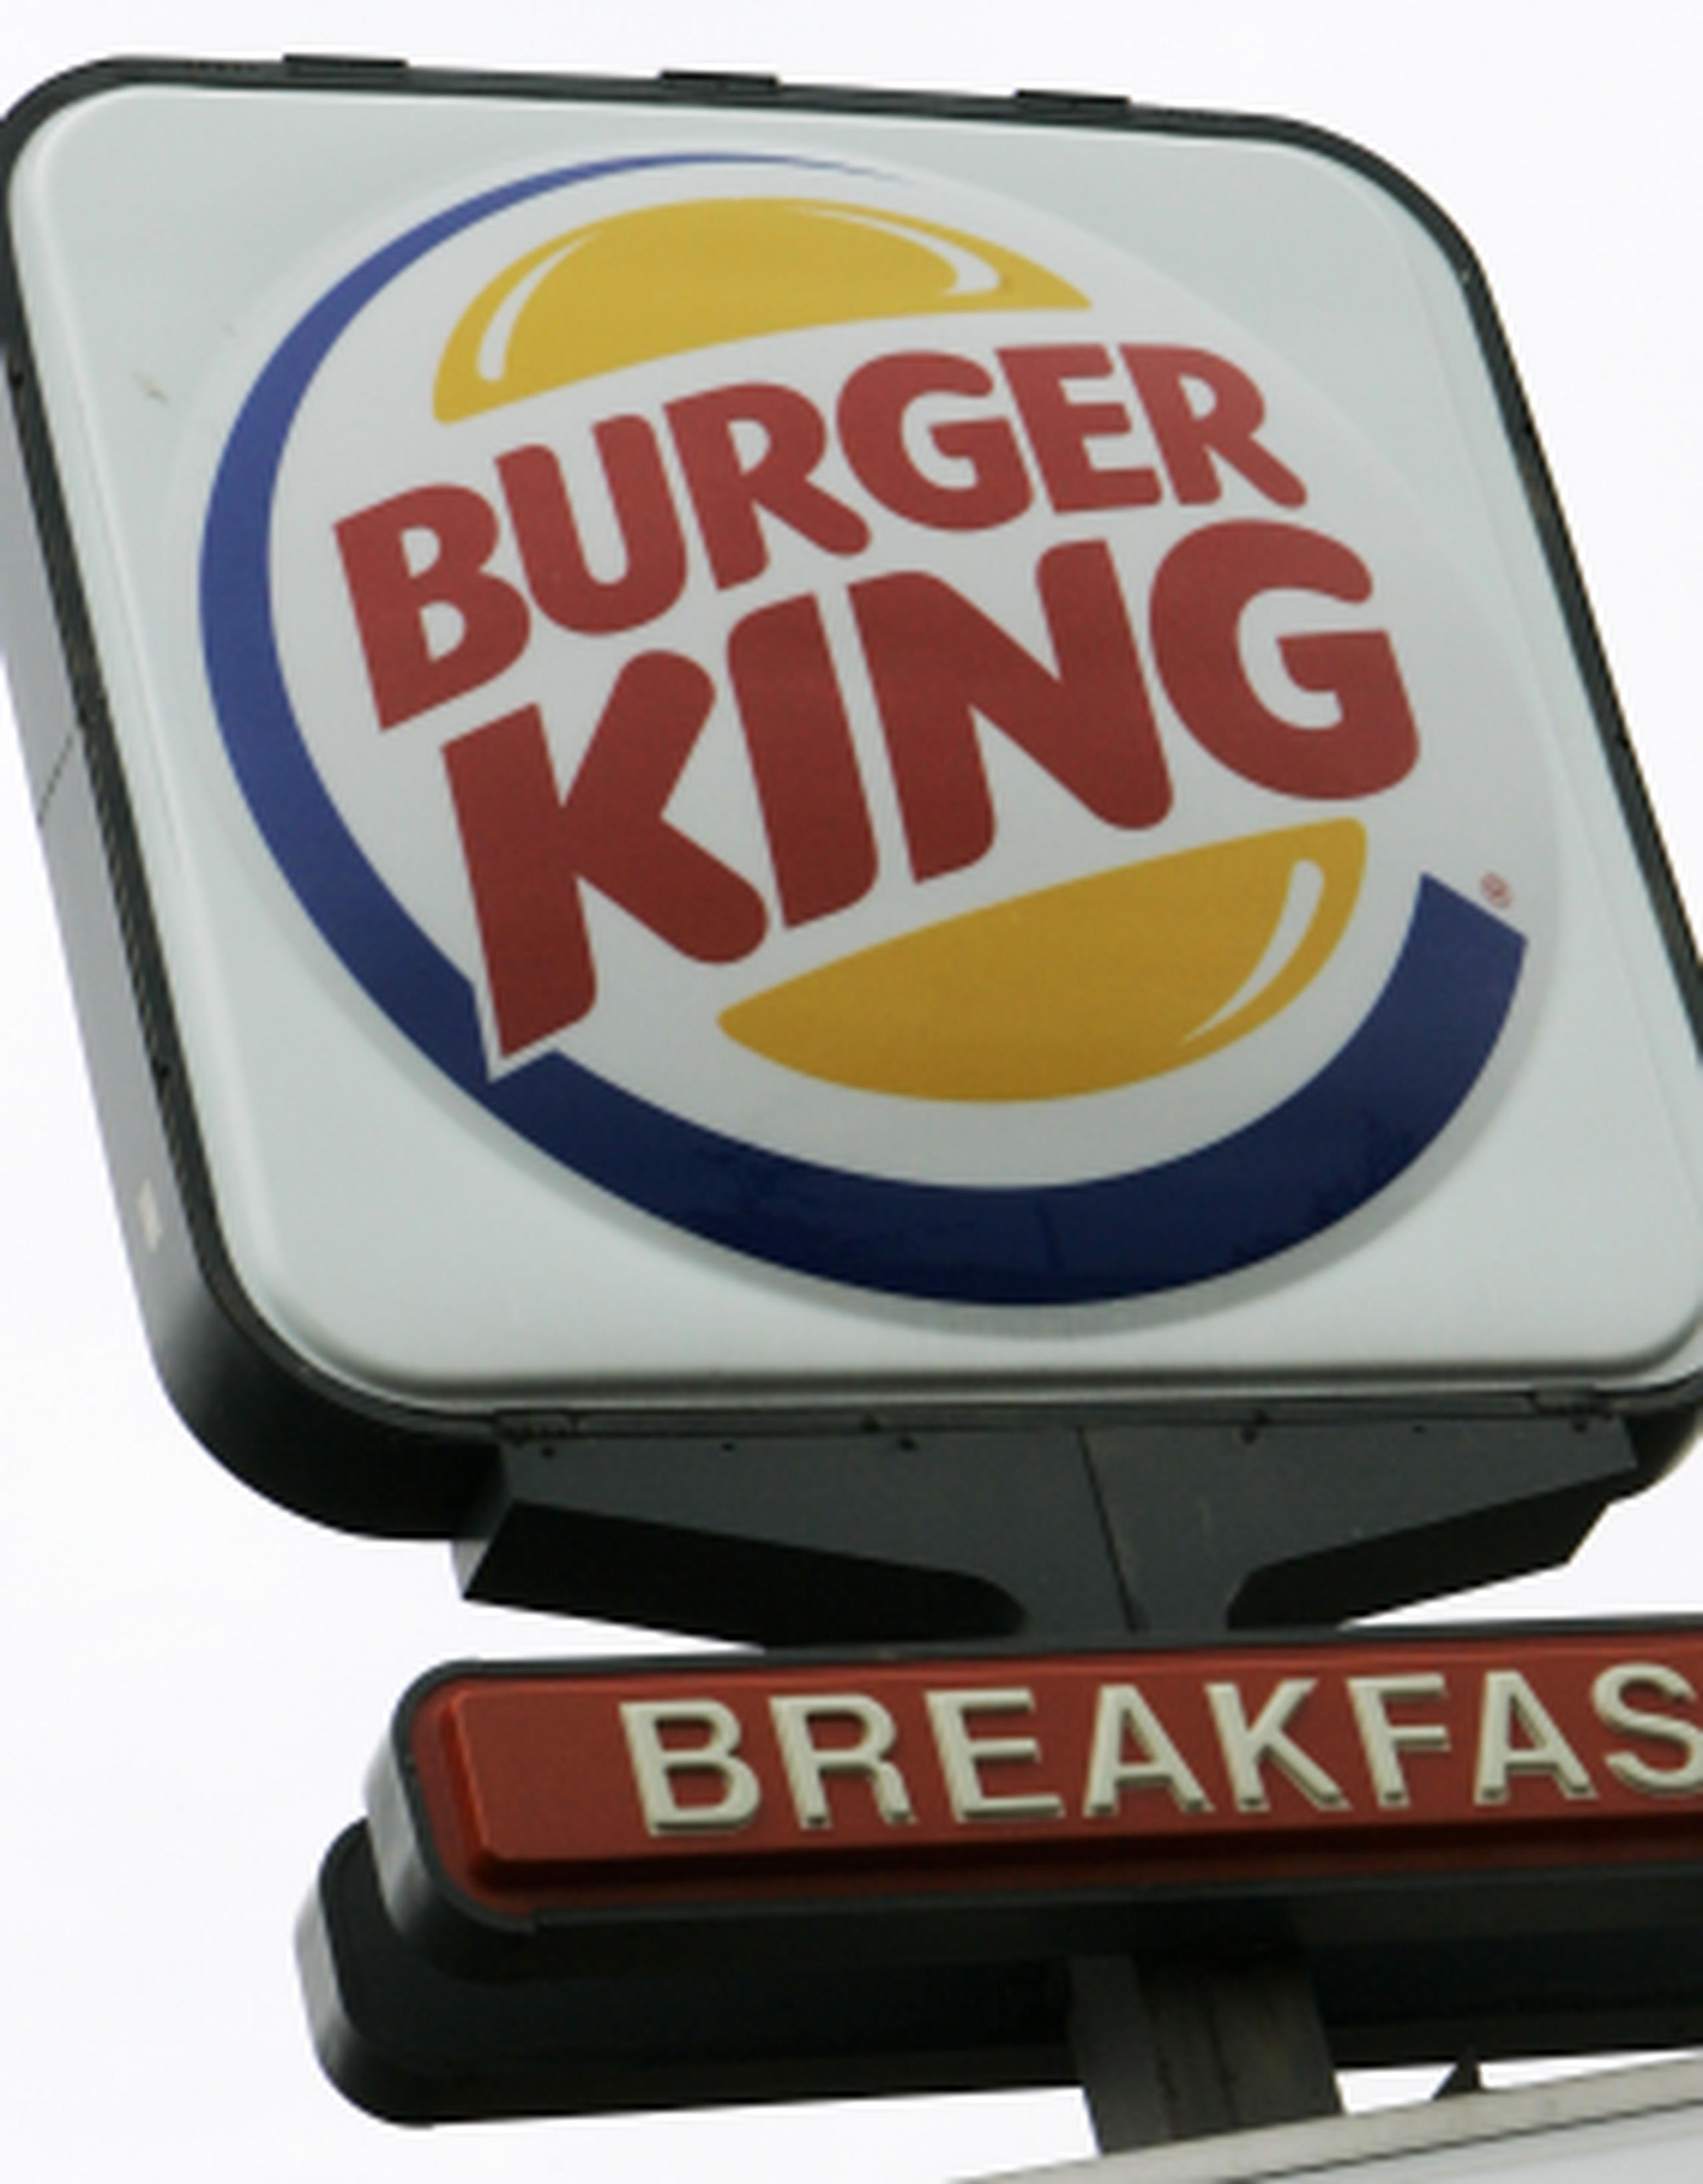 Burger King Worldwide abrió un restaurante en el aeropuerto de Marsella gracias a un acuerdo con Autogrill, que opera restaurantes en estaciones de servicio en autopistas. (Archivo)